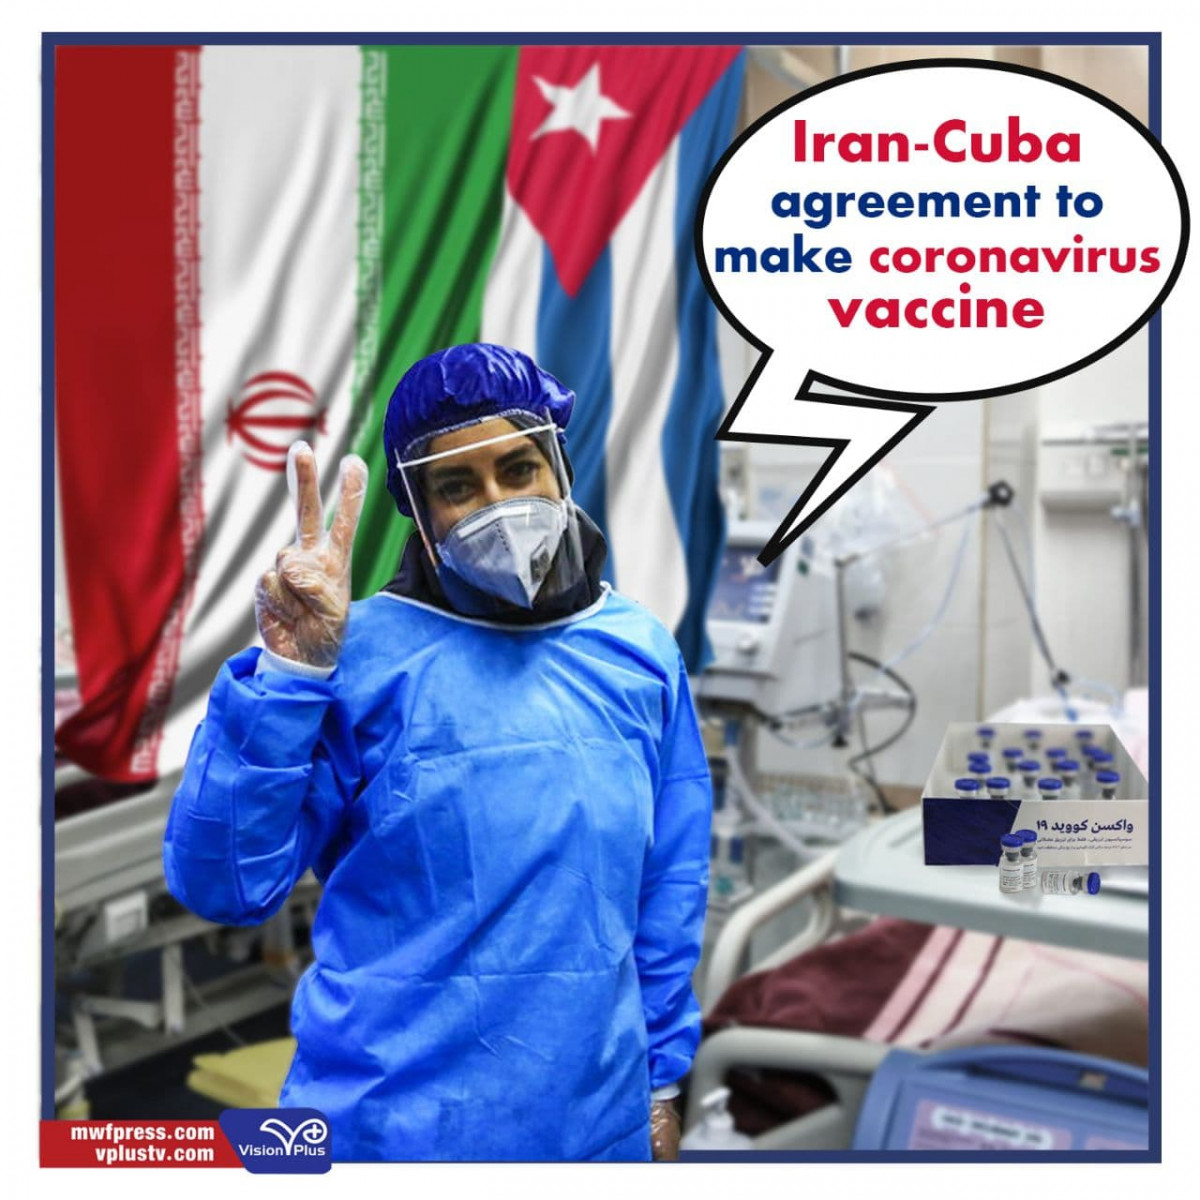 Iran-Cuba agreement to make coronavirus vaccine